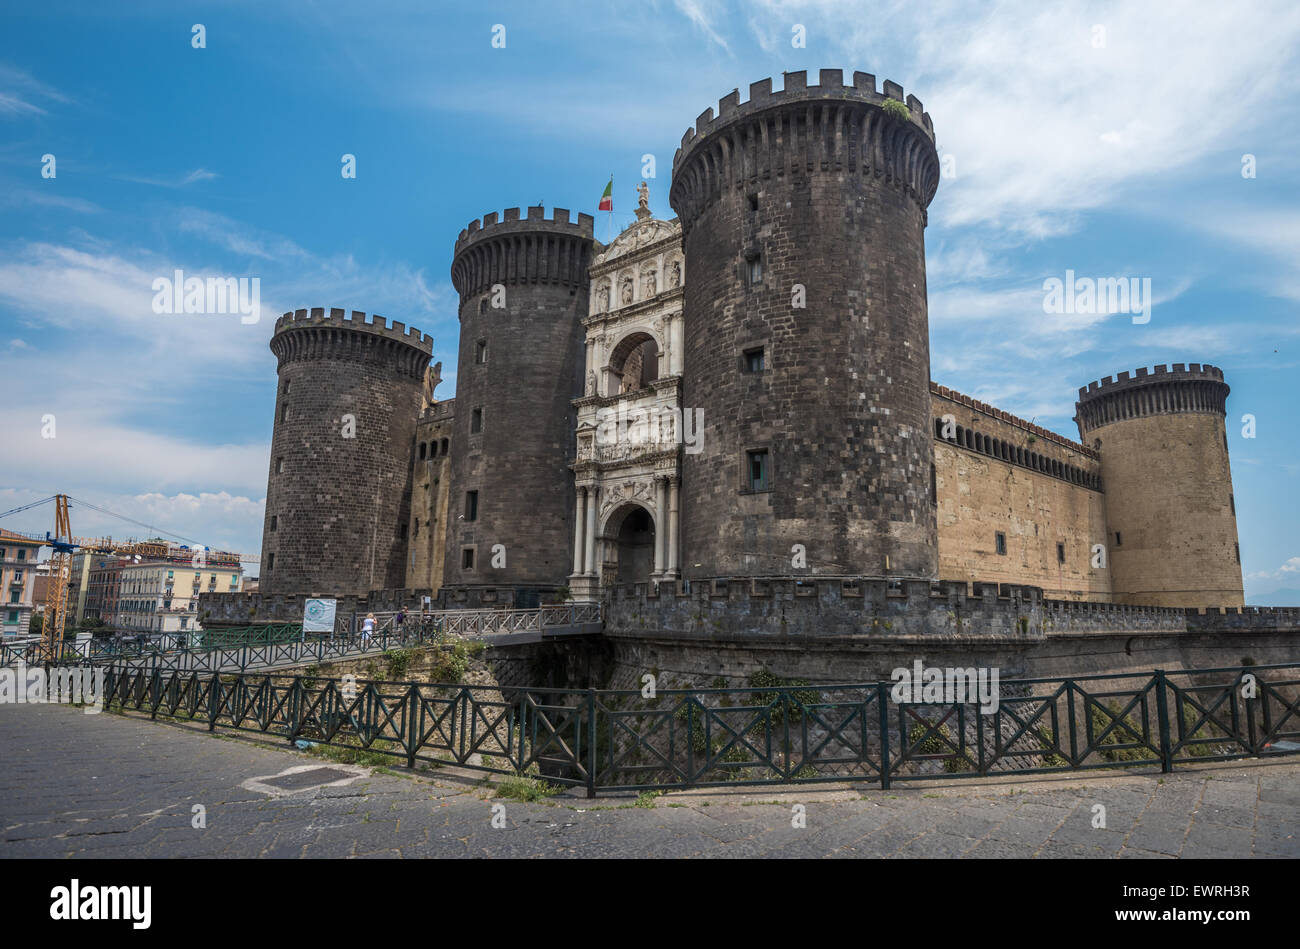 Le Castel Nuovo ou Maschio Angioino, monument de Naples, Italie Banque D'Images